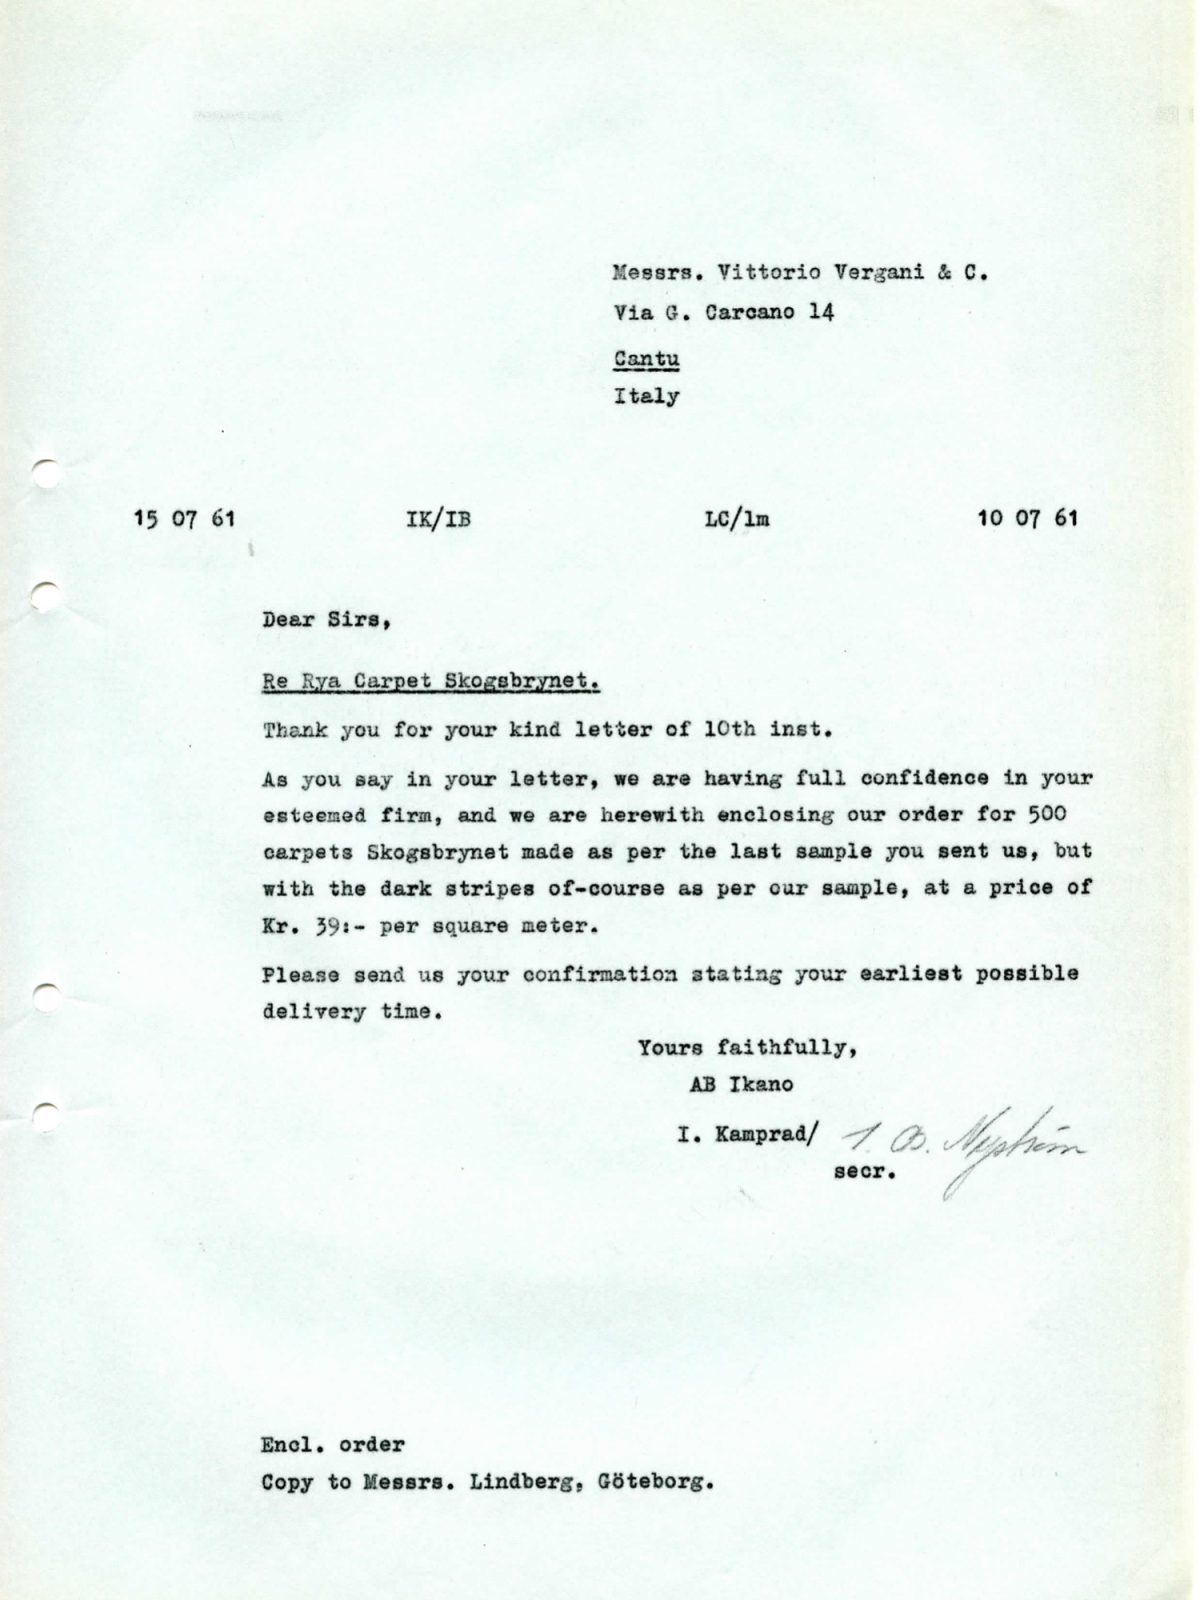 Faksimil av maskinskrivet brev från Ingvar Kamprad till Vittorio Vergani & Co i Italien, daterat 15 juli 1961.